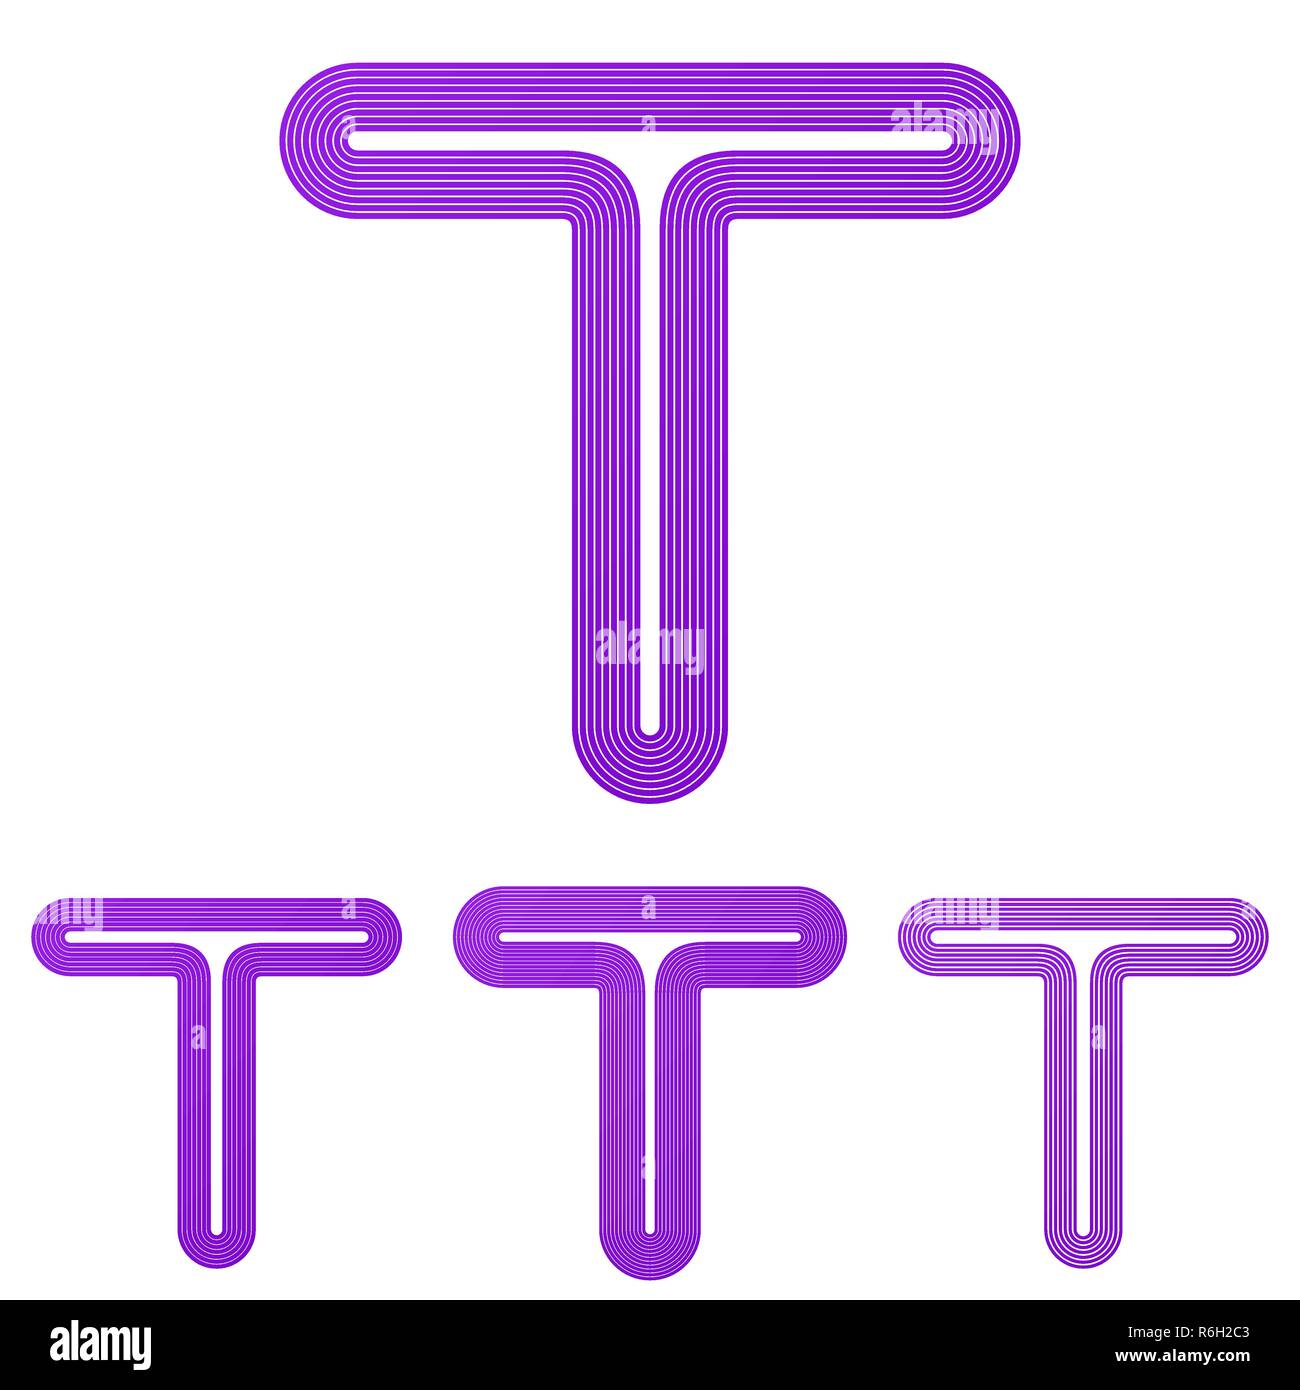 Purple t letter logo design set Stock Vector